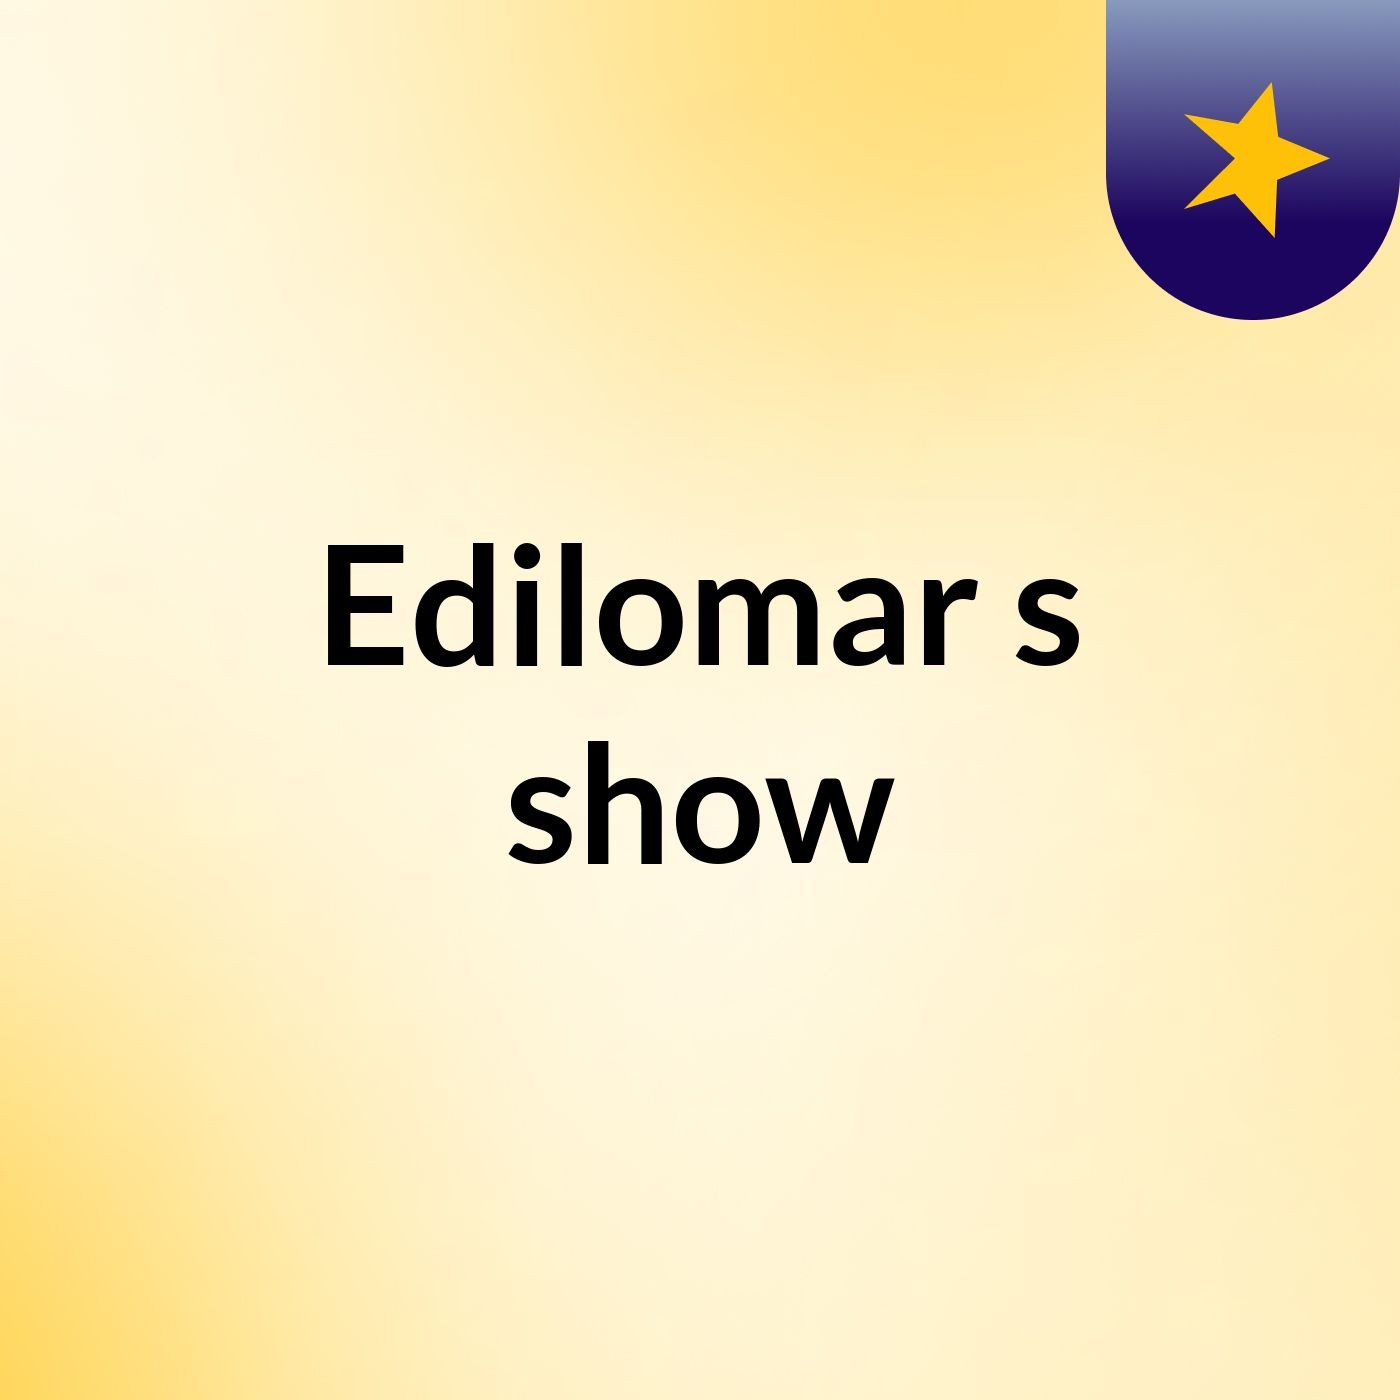 Edilomar's show